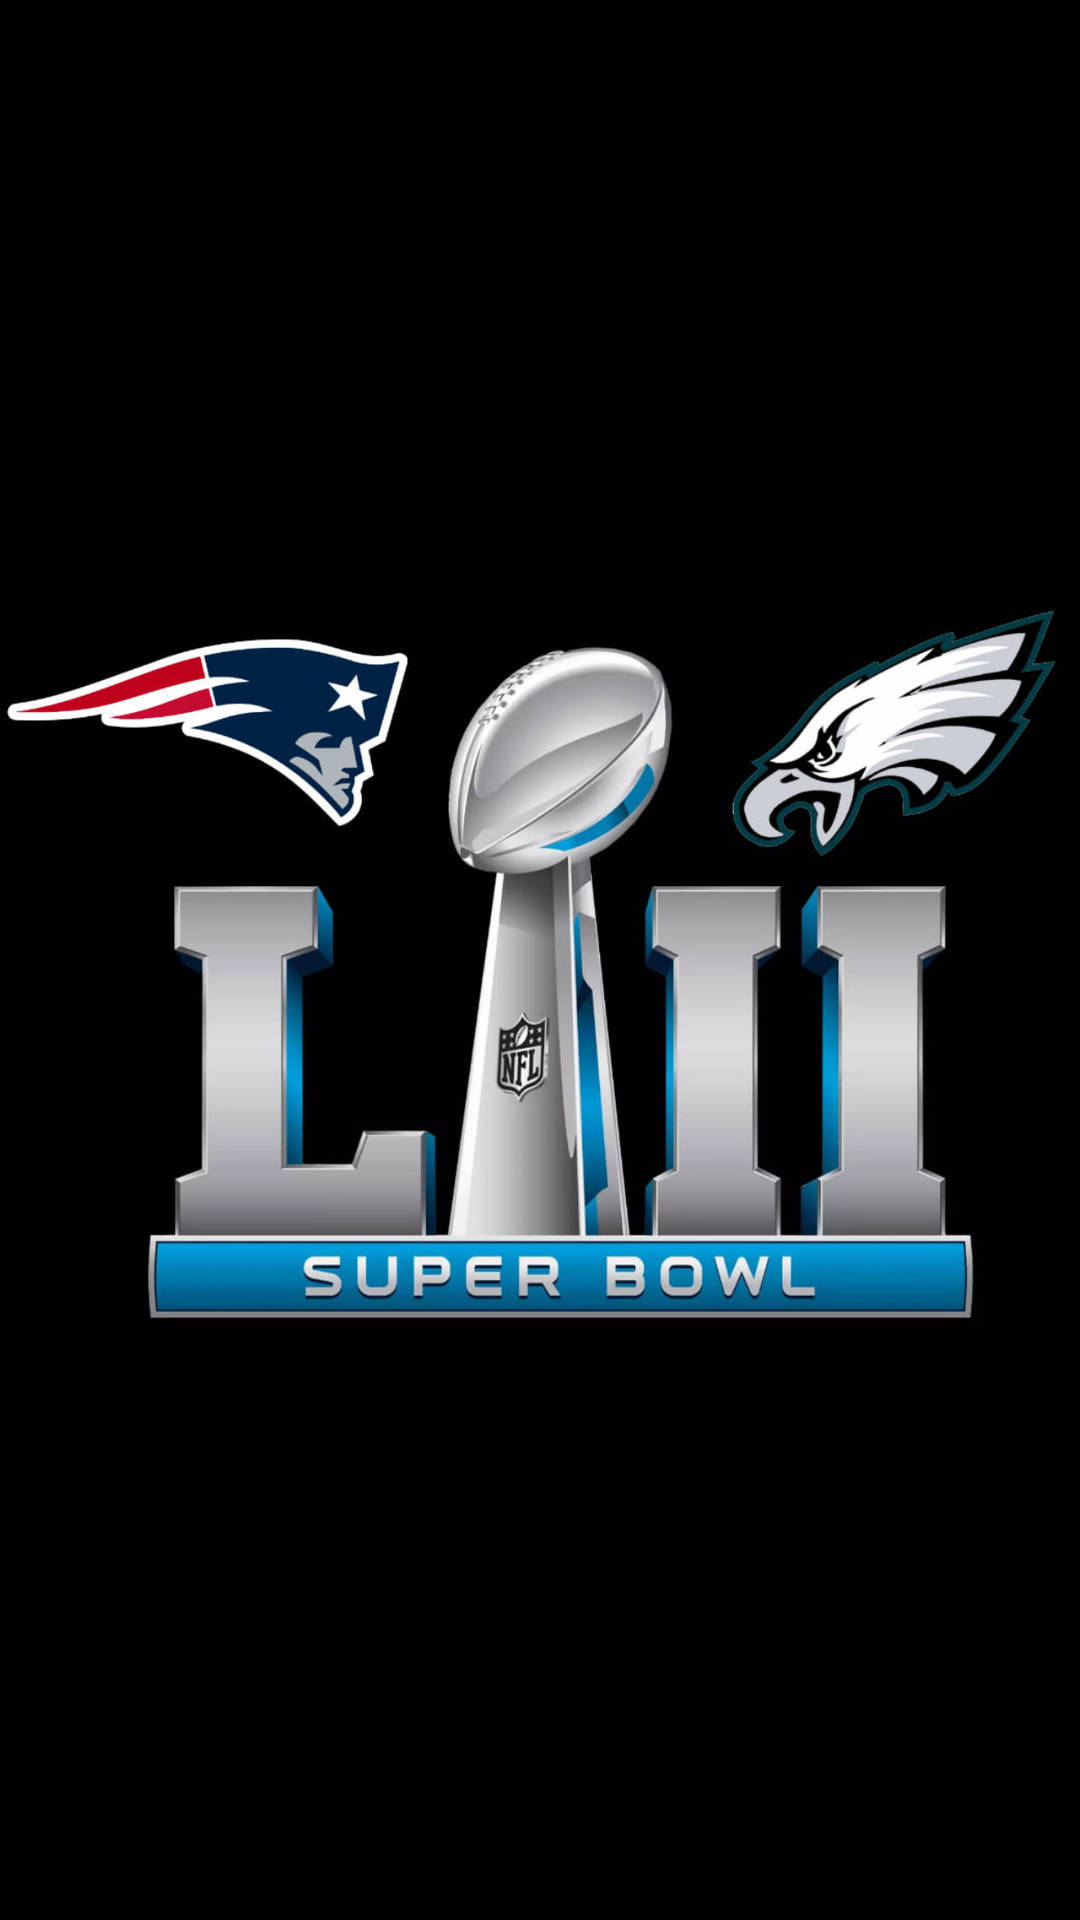 Super Bowl 2017 Patriots Vs Eagles Wallpaper